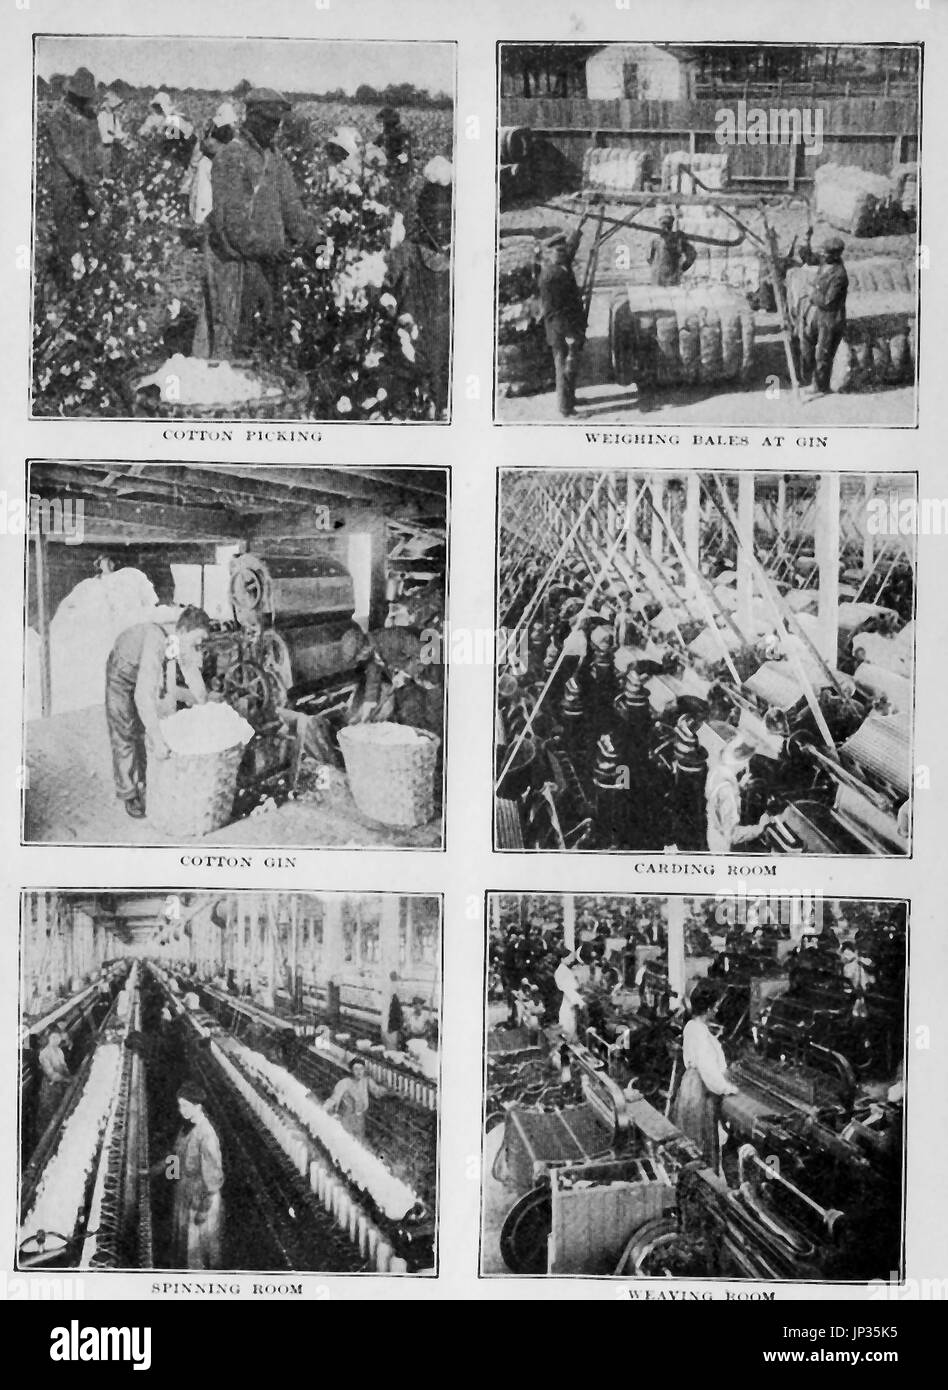 1912 ilustración mostrando diversos procesos recogiendo algodón, producción, tejido, cardado y spinning Foto de stock